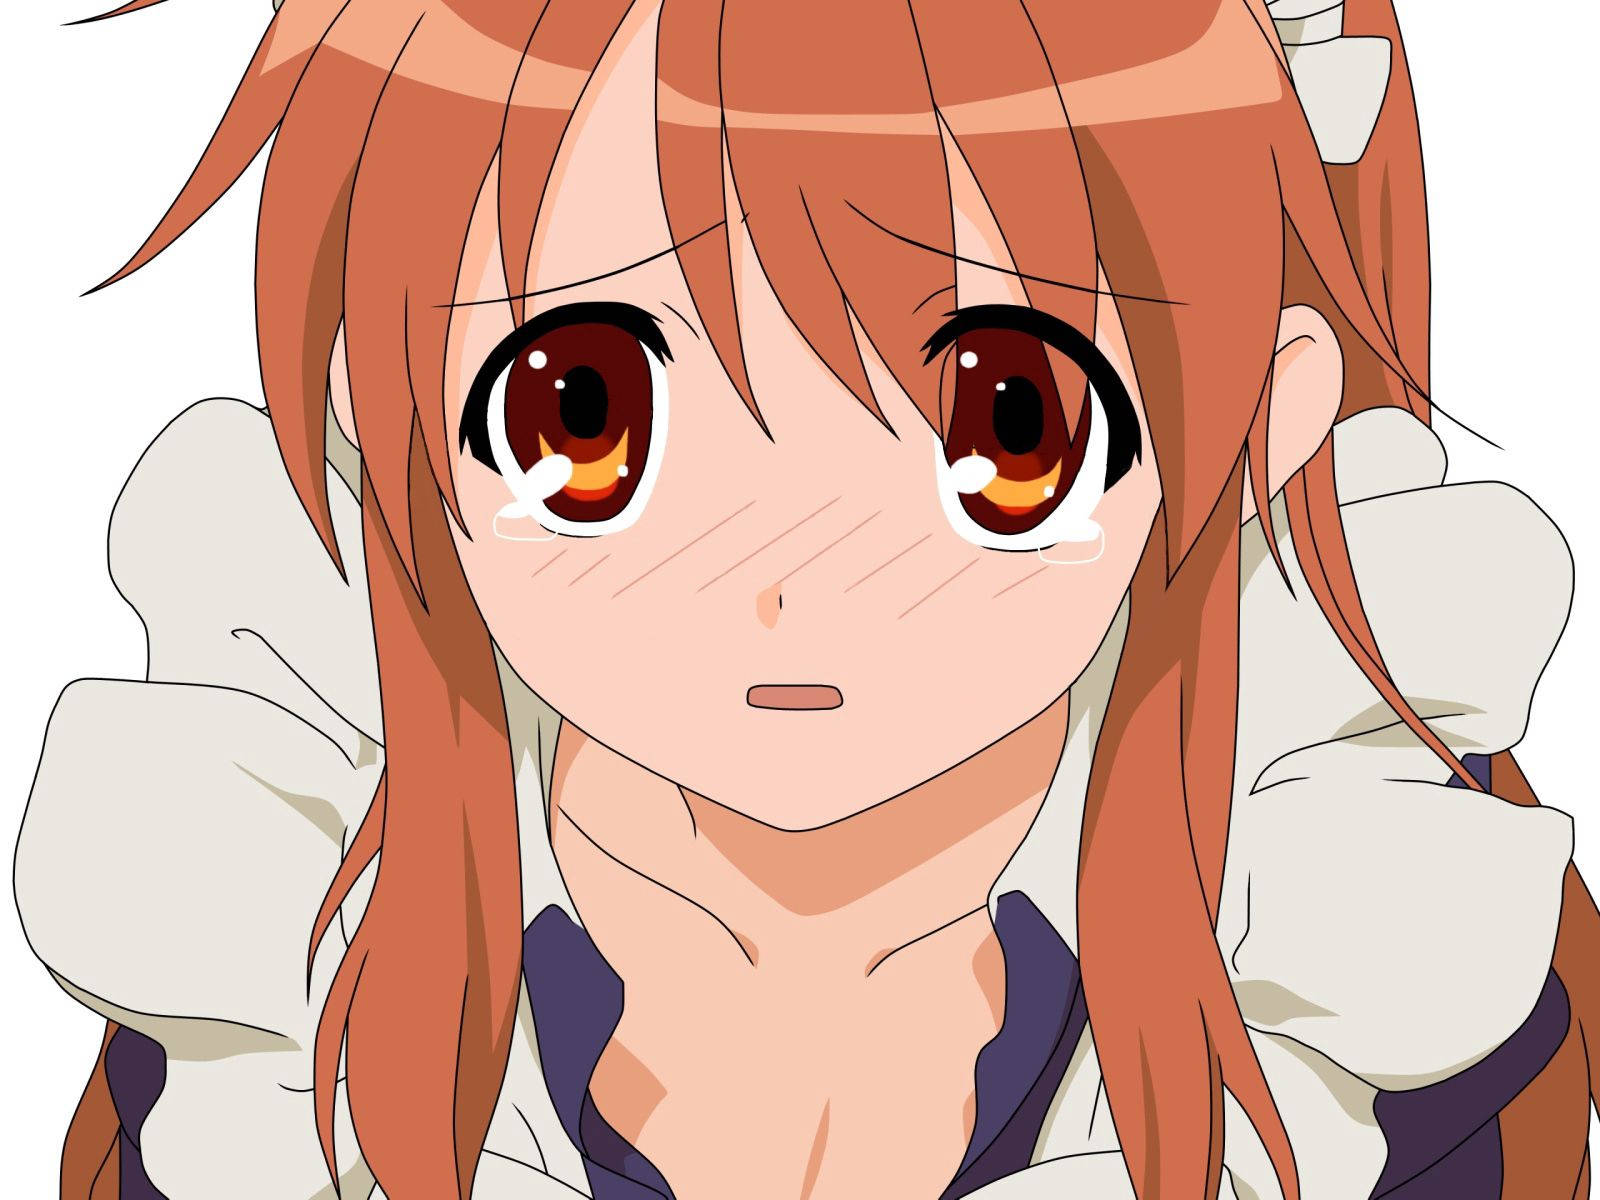 A Sad Anime Girl In Grief